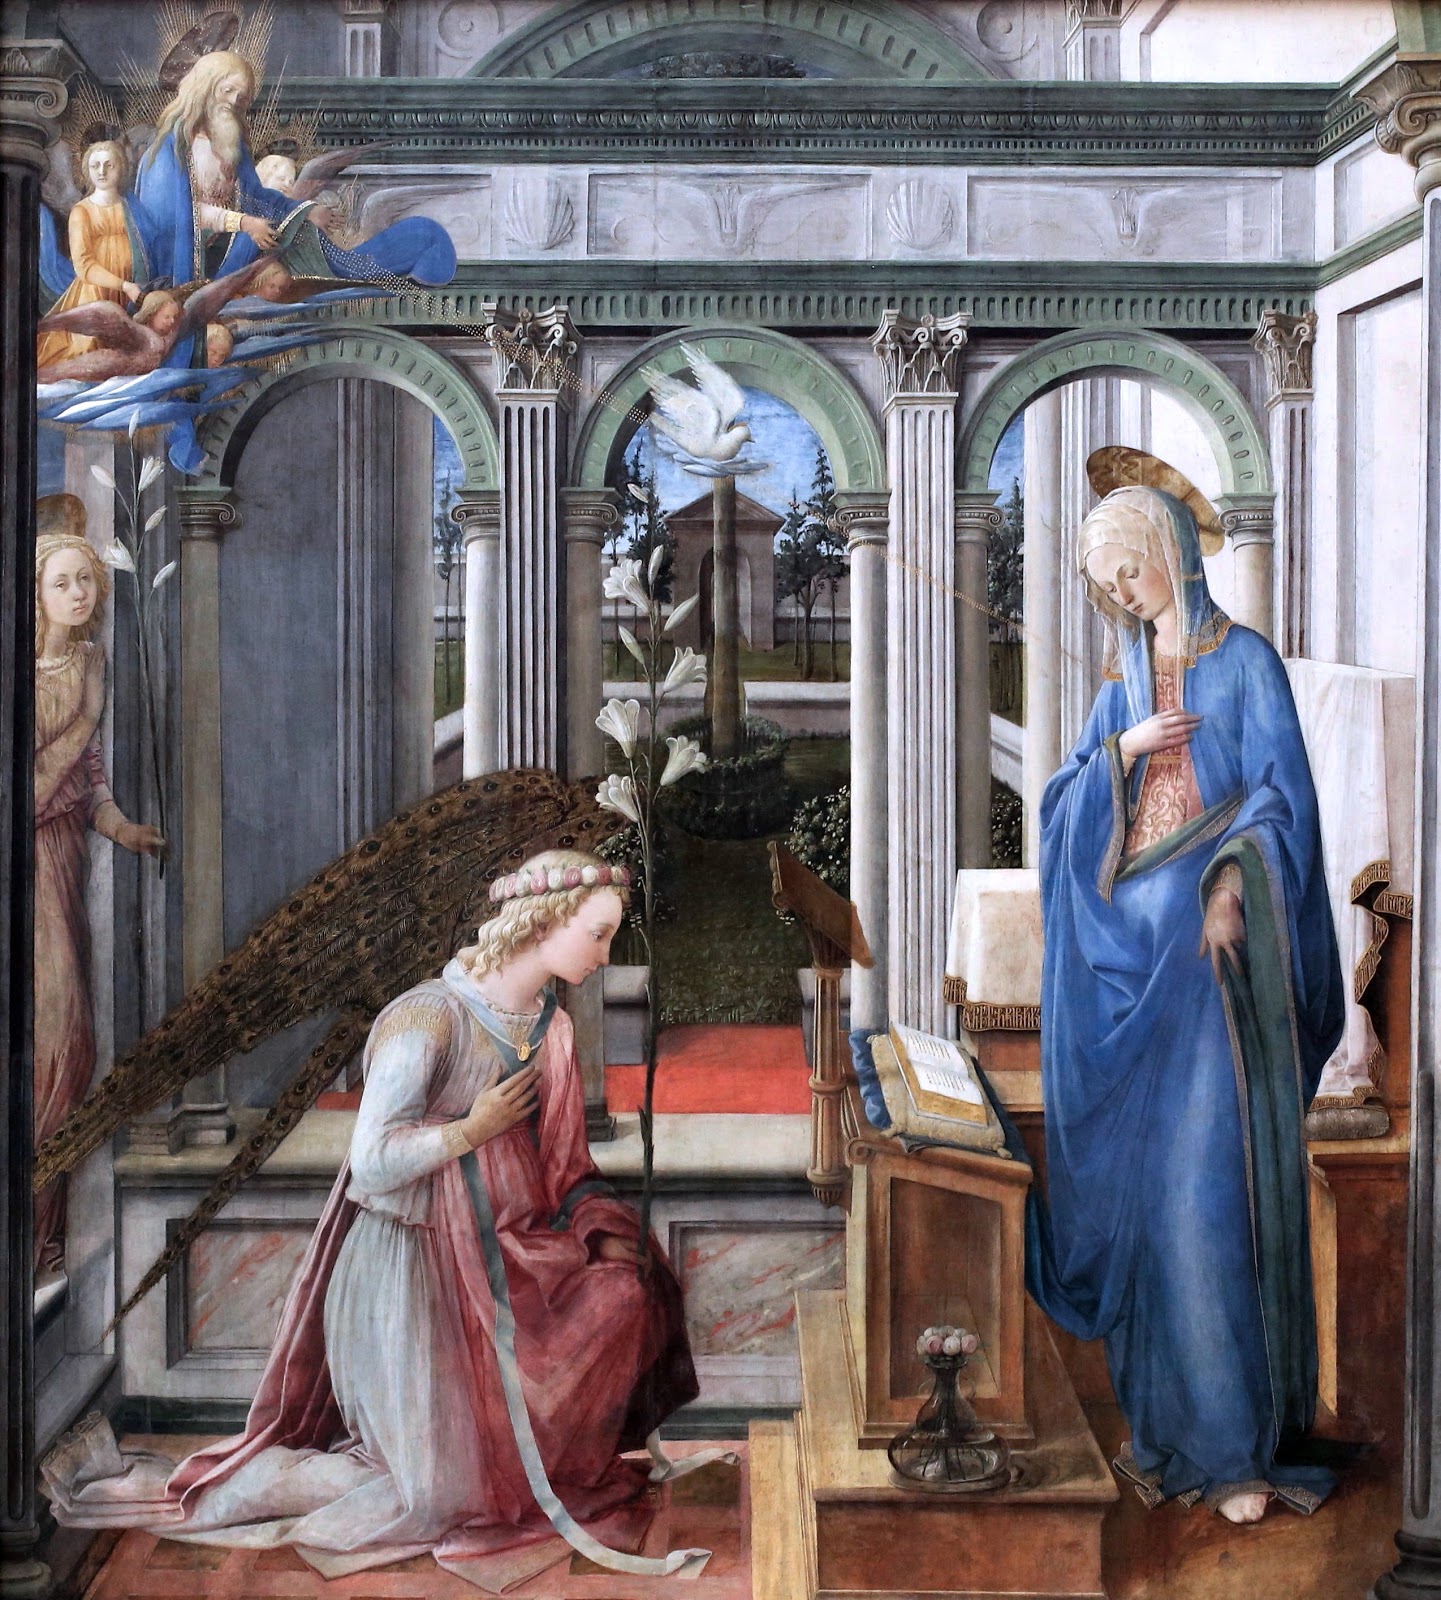 Filippino+Lippi-1457-1504 (148).jpg